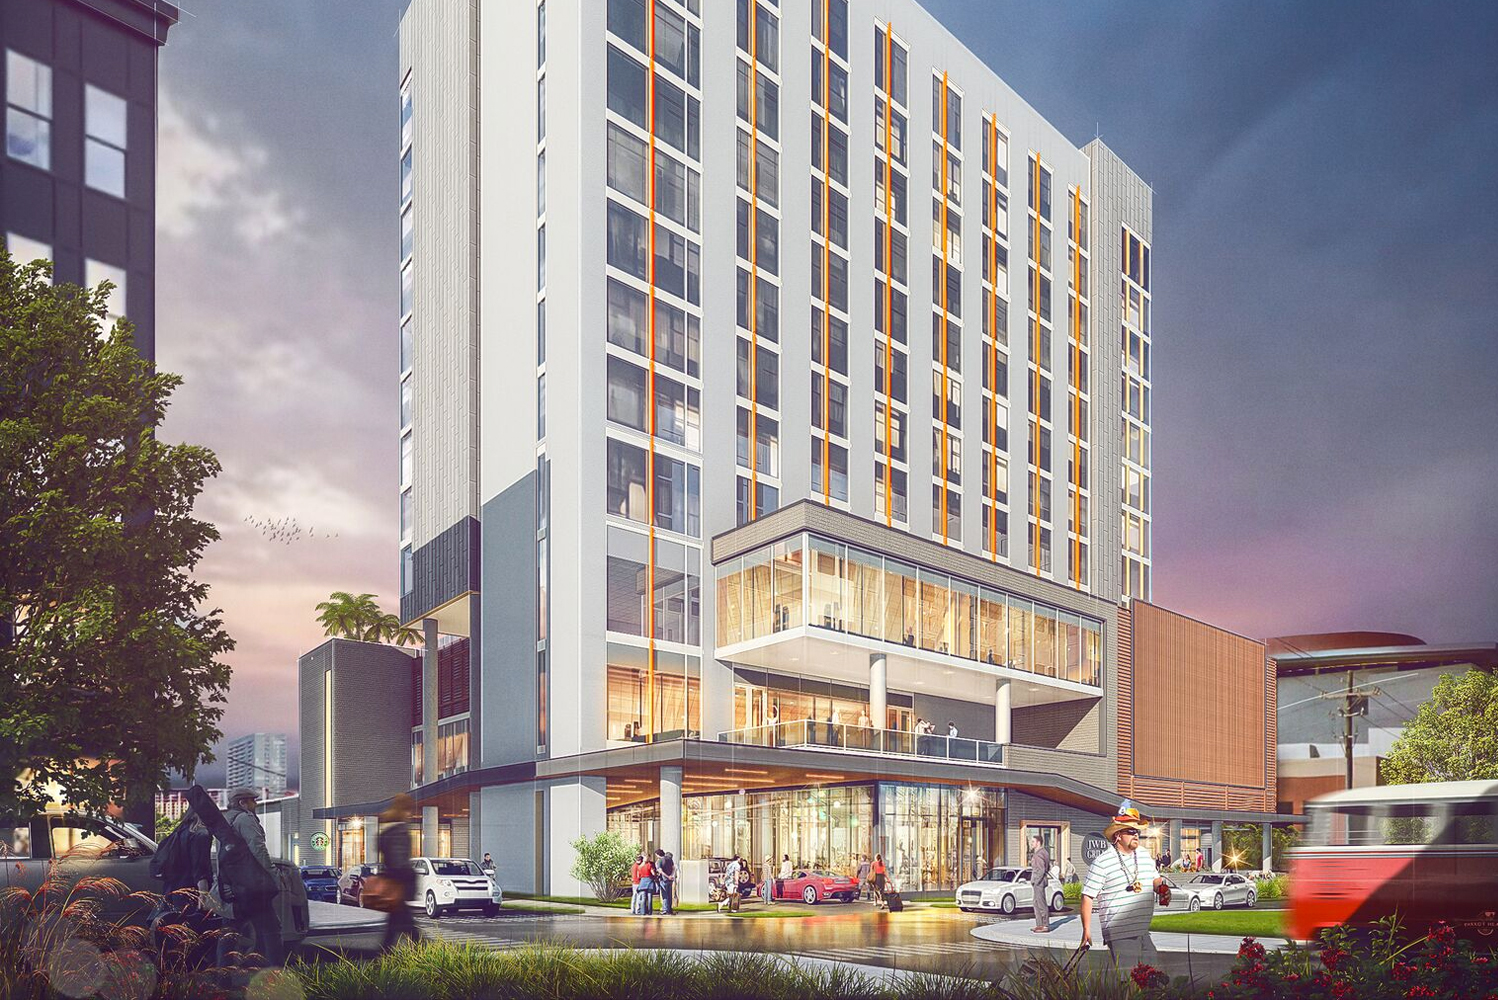 Margaritaville Nashville Hotel is scheduled to open in summer 2019 